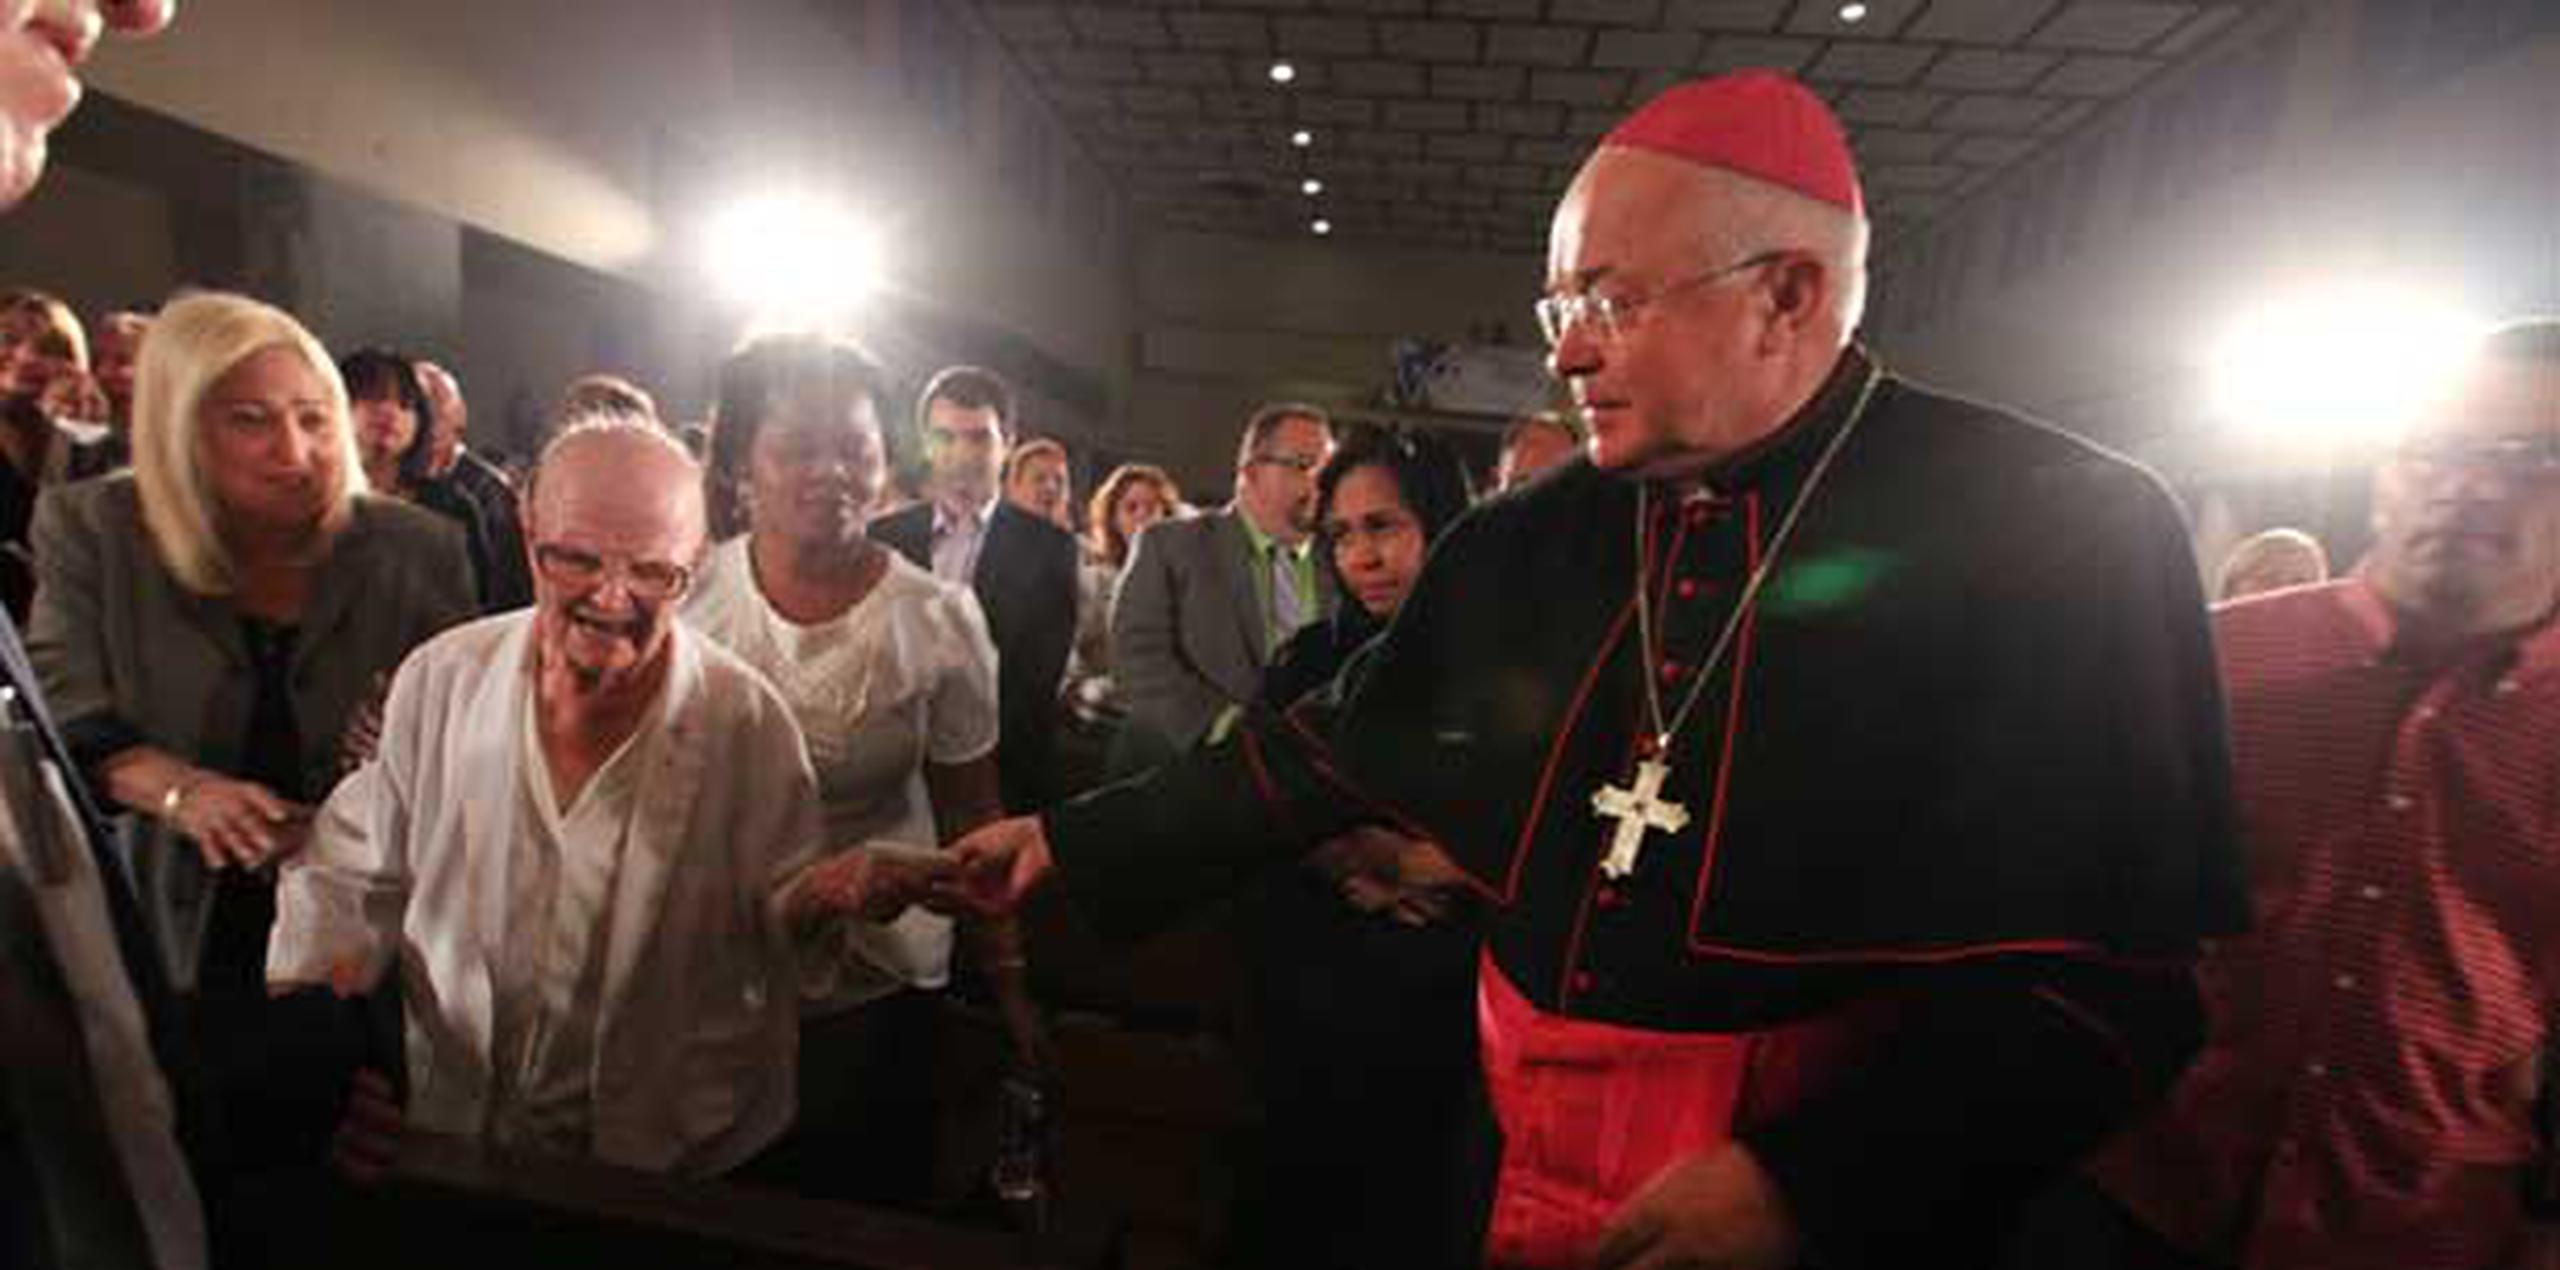 Jozef Wesolowski durante la misa en memoria del cardenal Luis Aponte Martínez en el 2012. (Archivo)